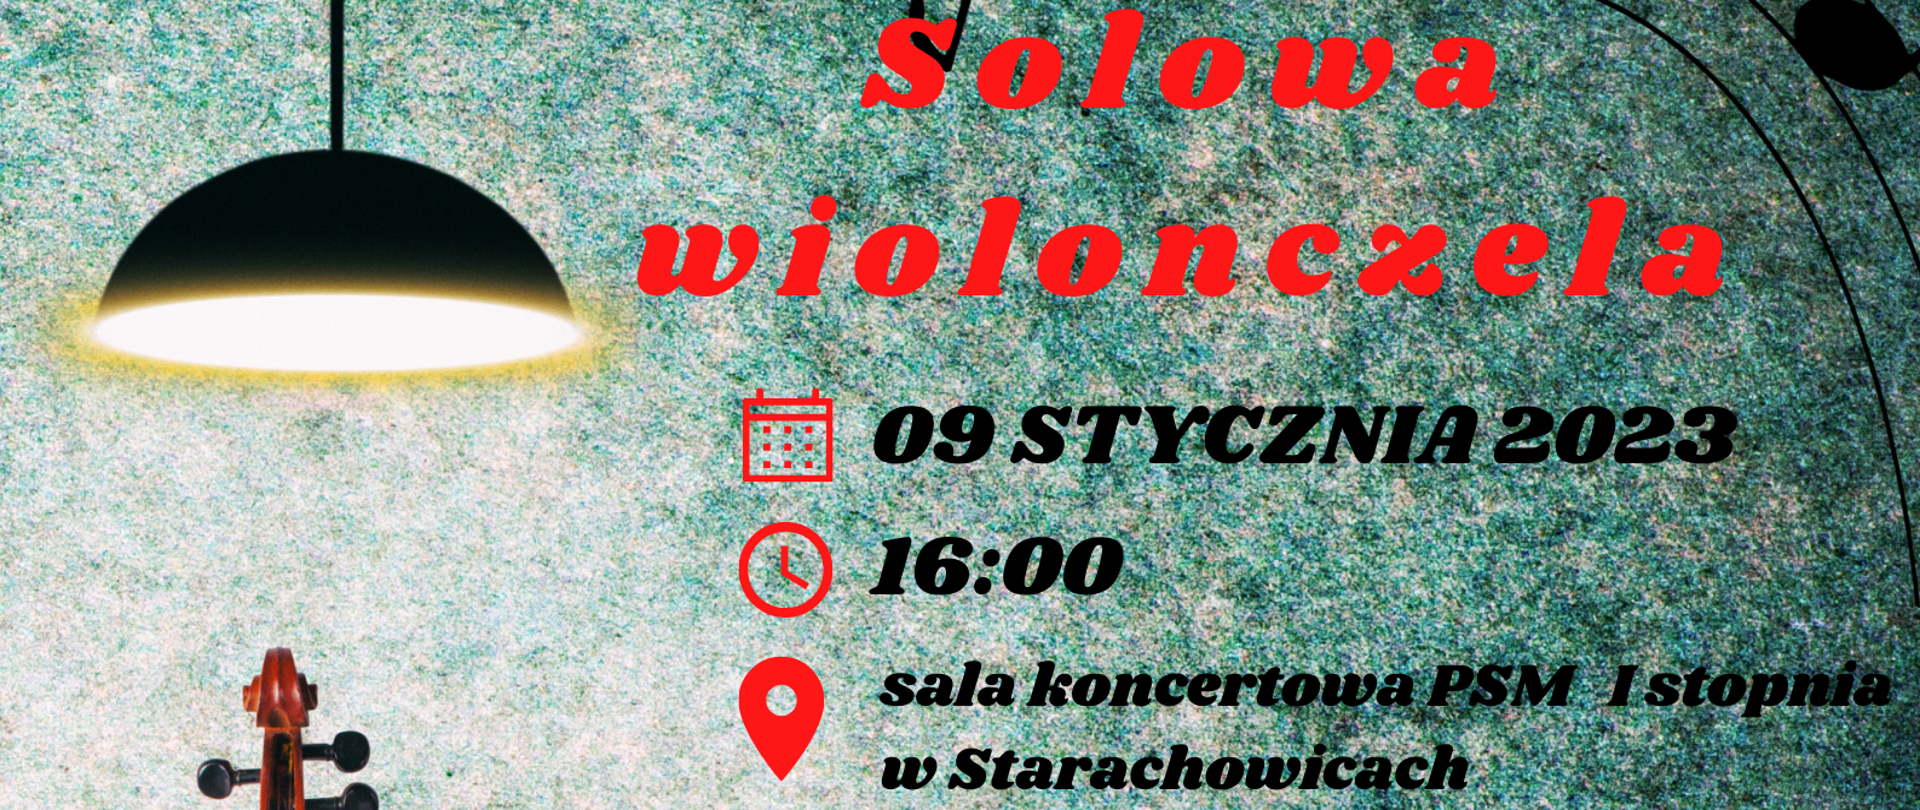 plakat graficzny - Solowa wiolonczela , 9 stycznia 2023 godz. 16.00 , sala koncertowa, po lewej czarna lampa, tło turkusowe